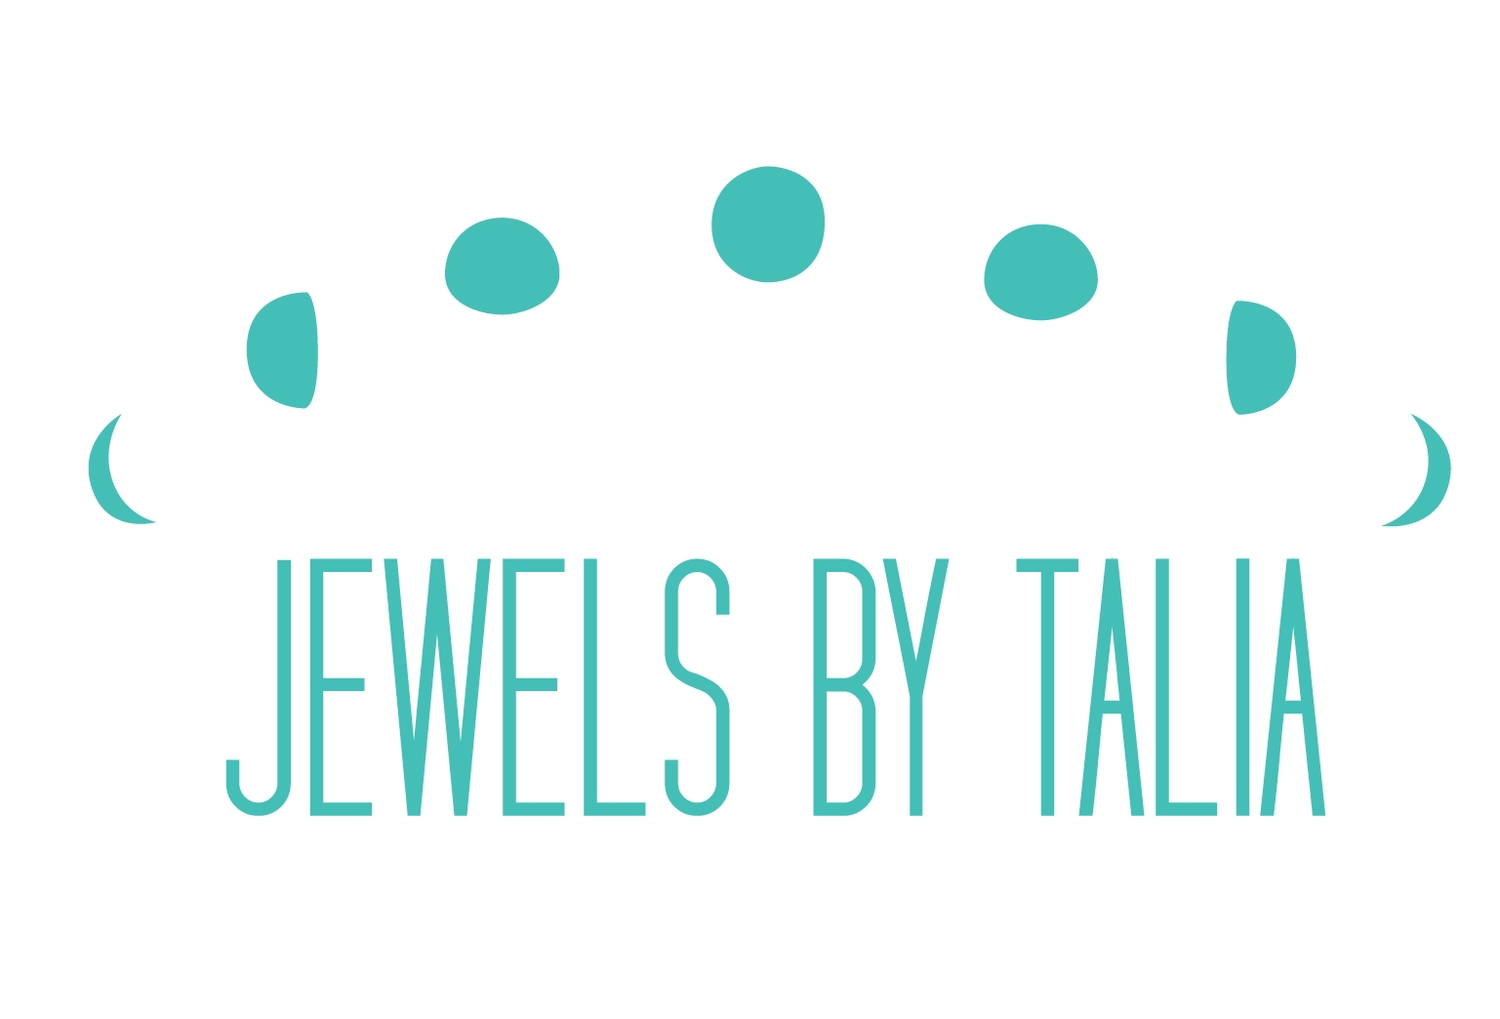 Jewels by Talia